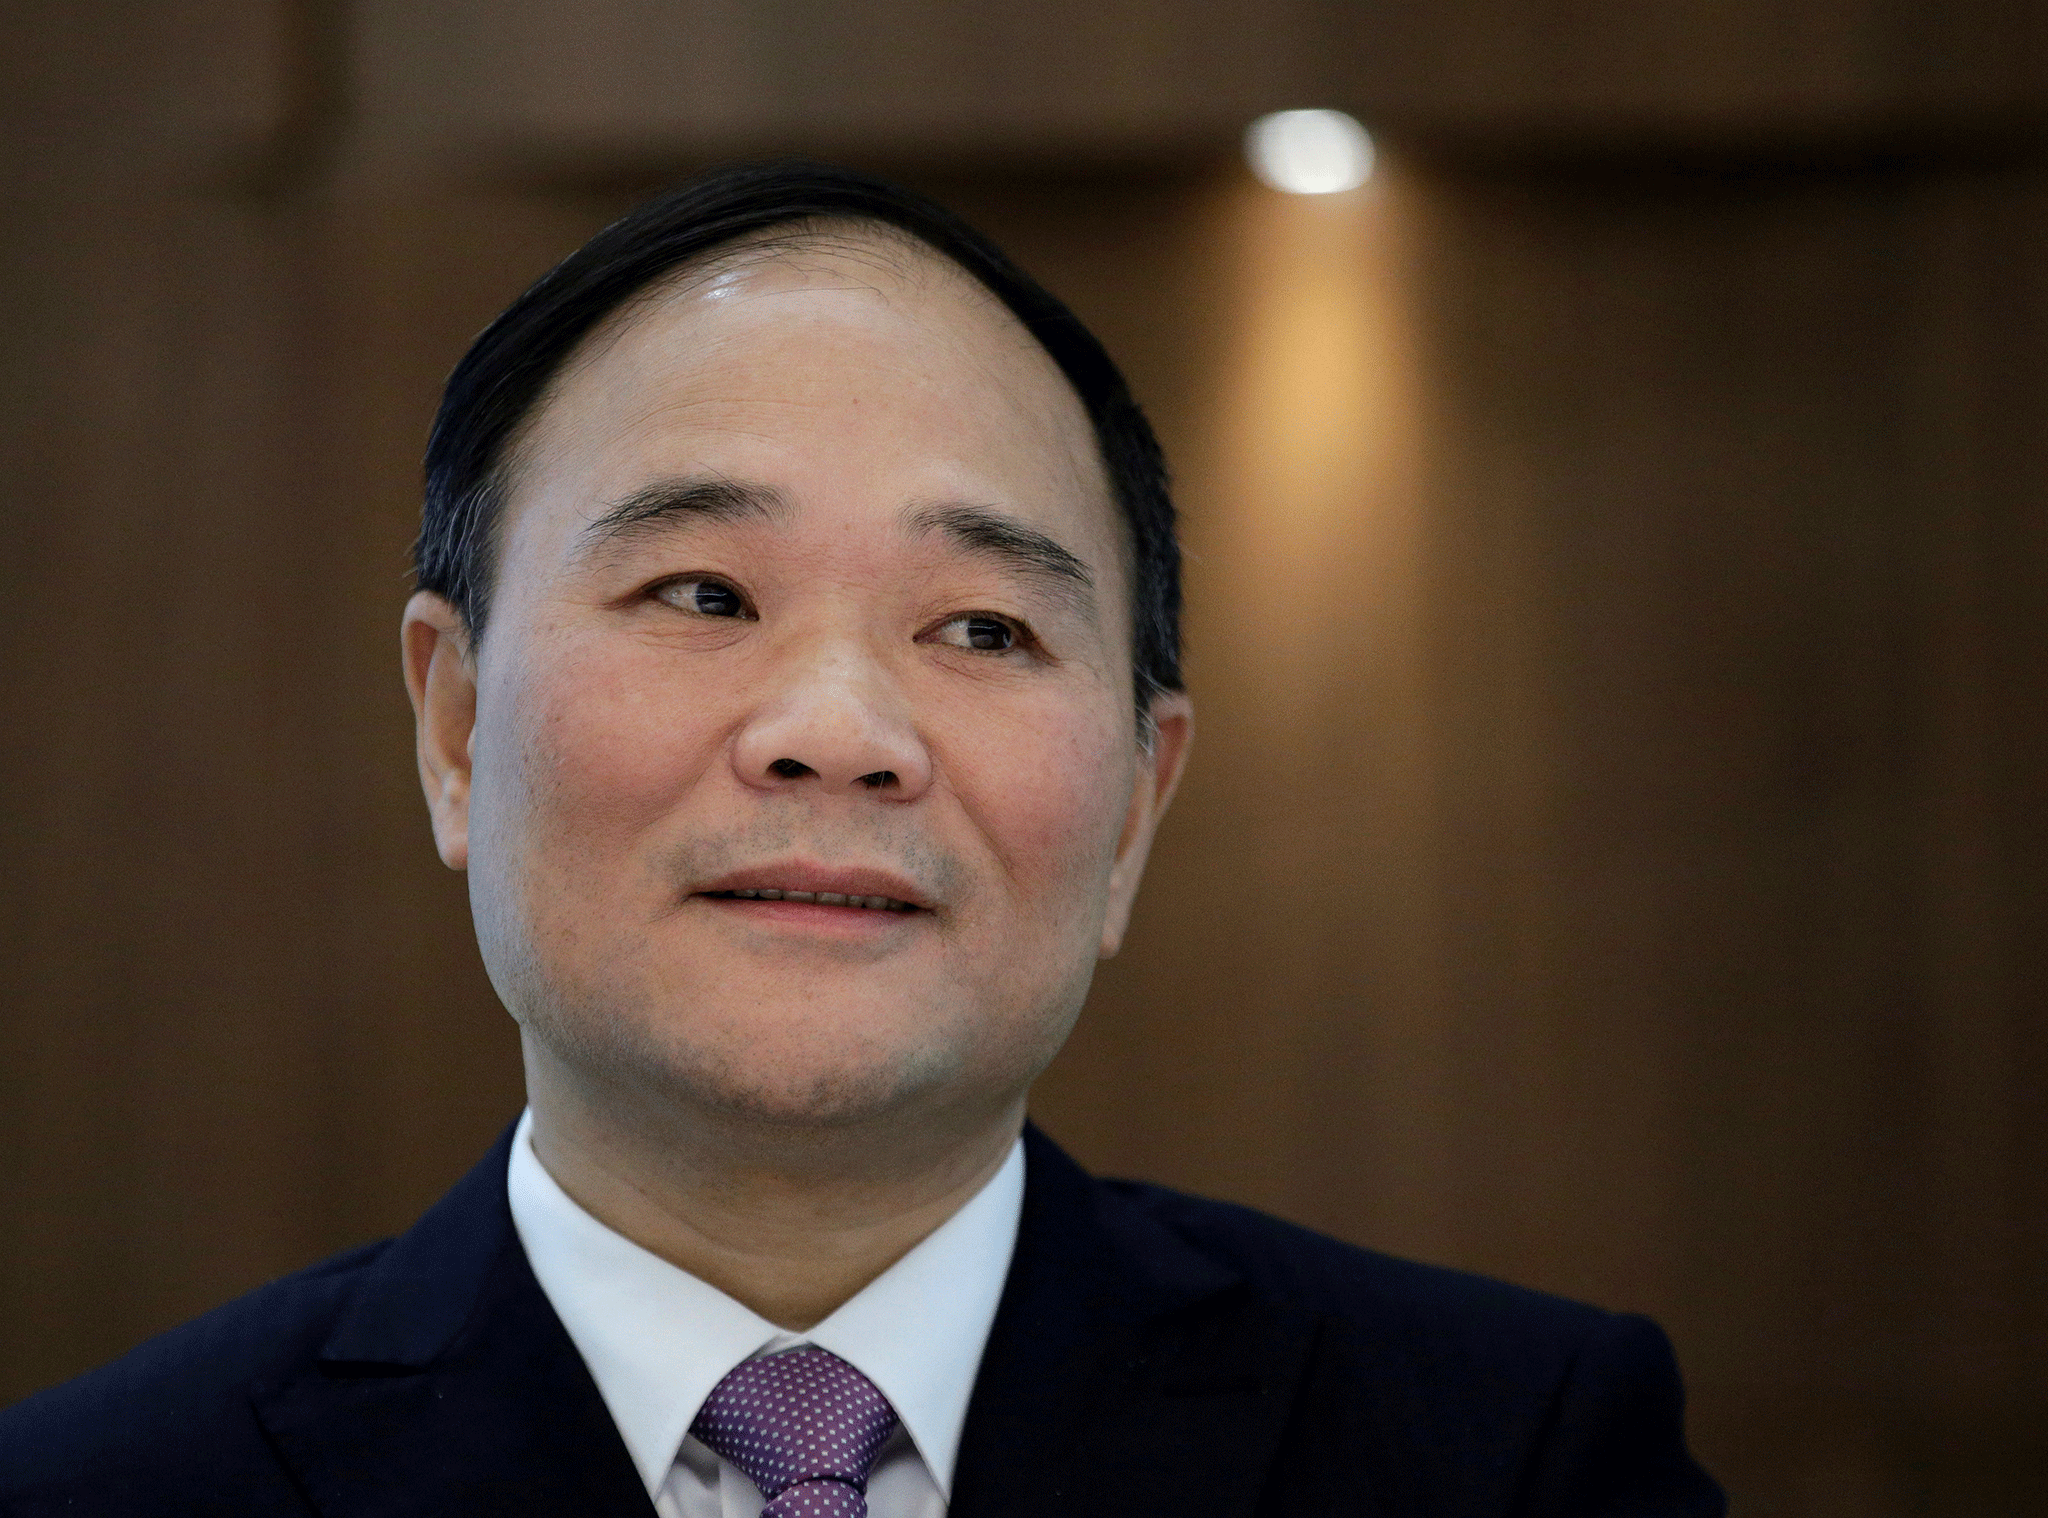 Li Shufu, founder and chairman of Zhejiang Geely Holding Group